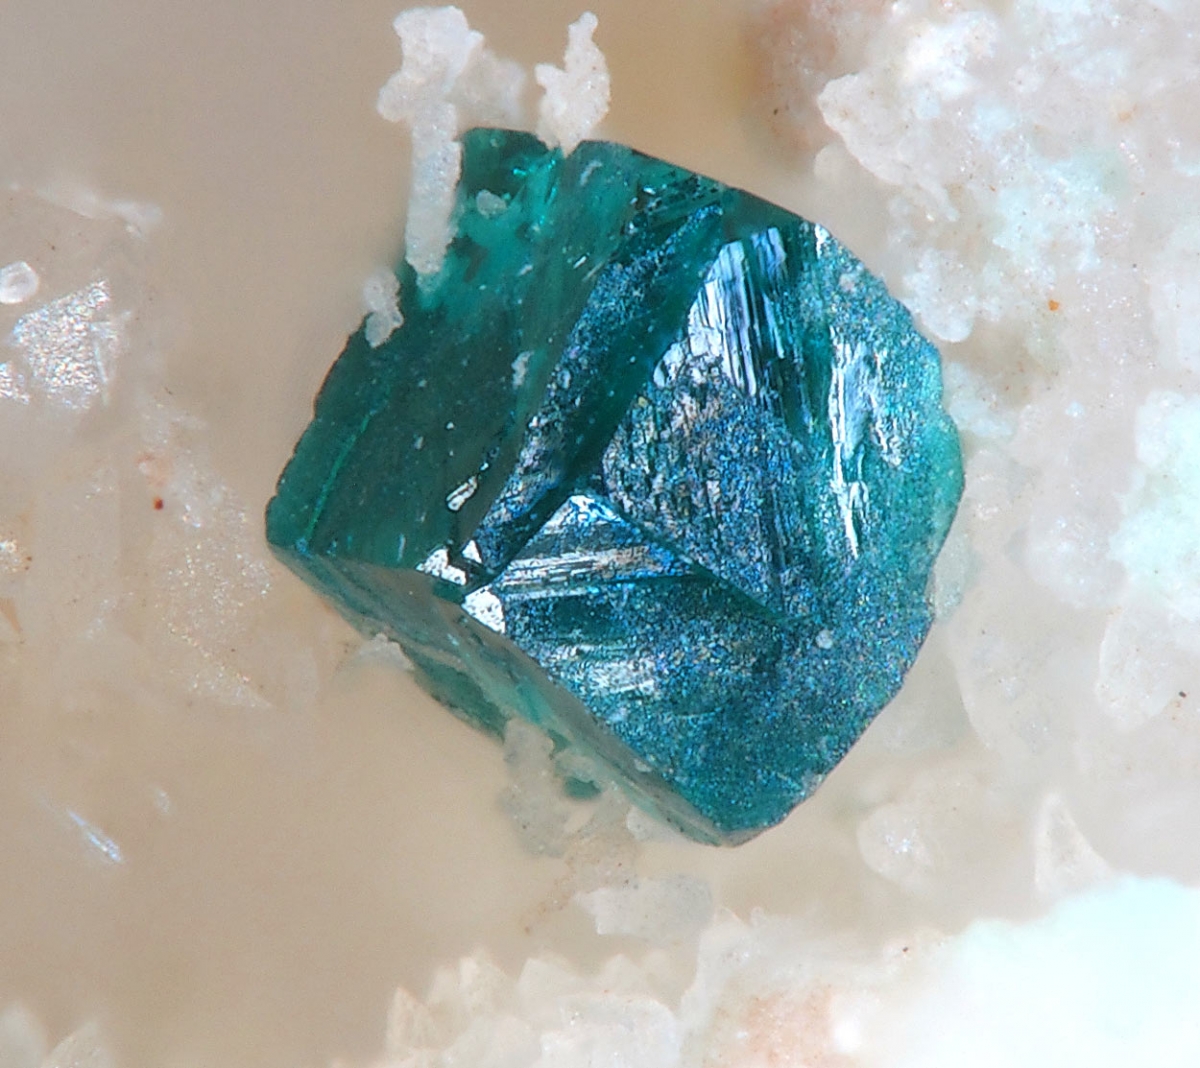 Псевдокубический кристалл клиноатакамита, Испания